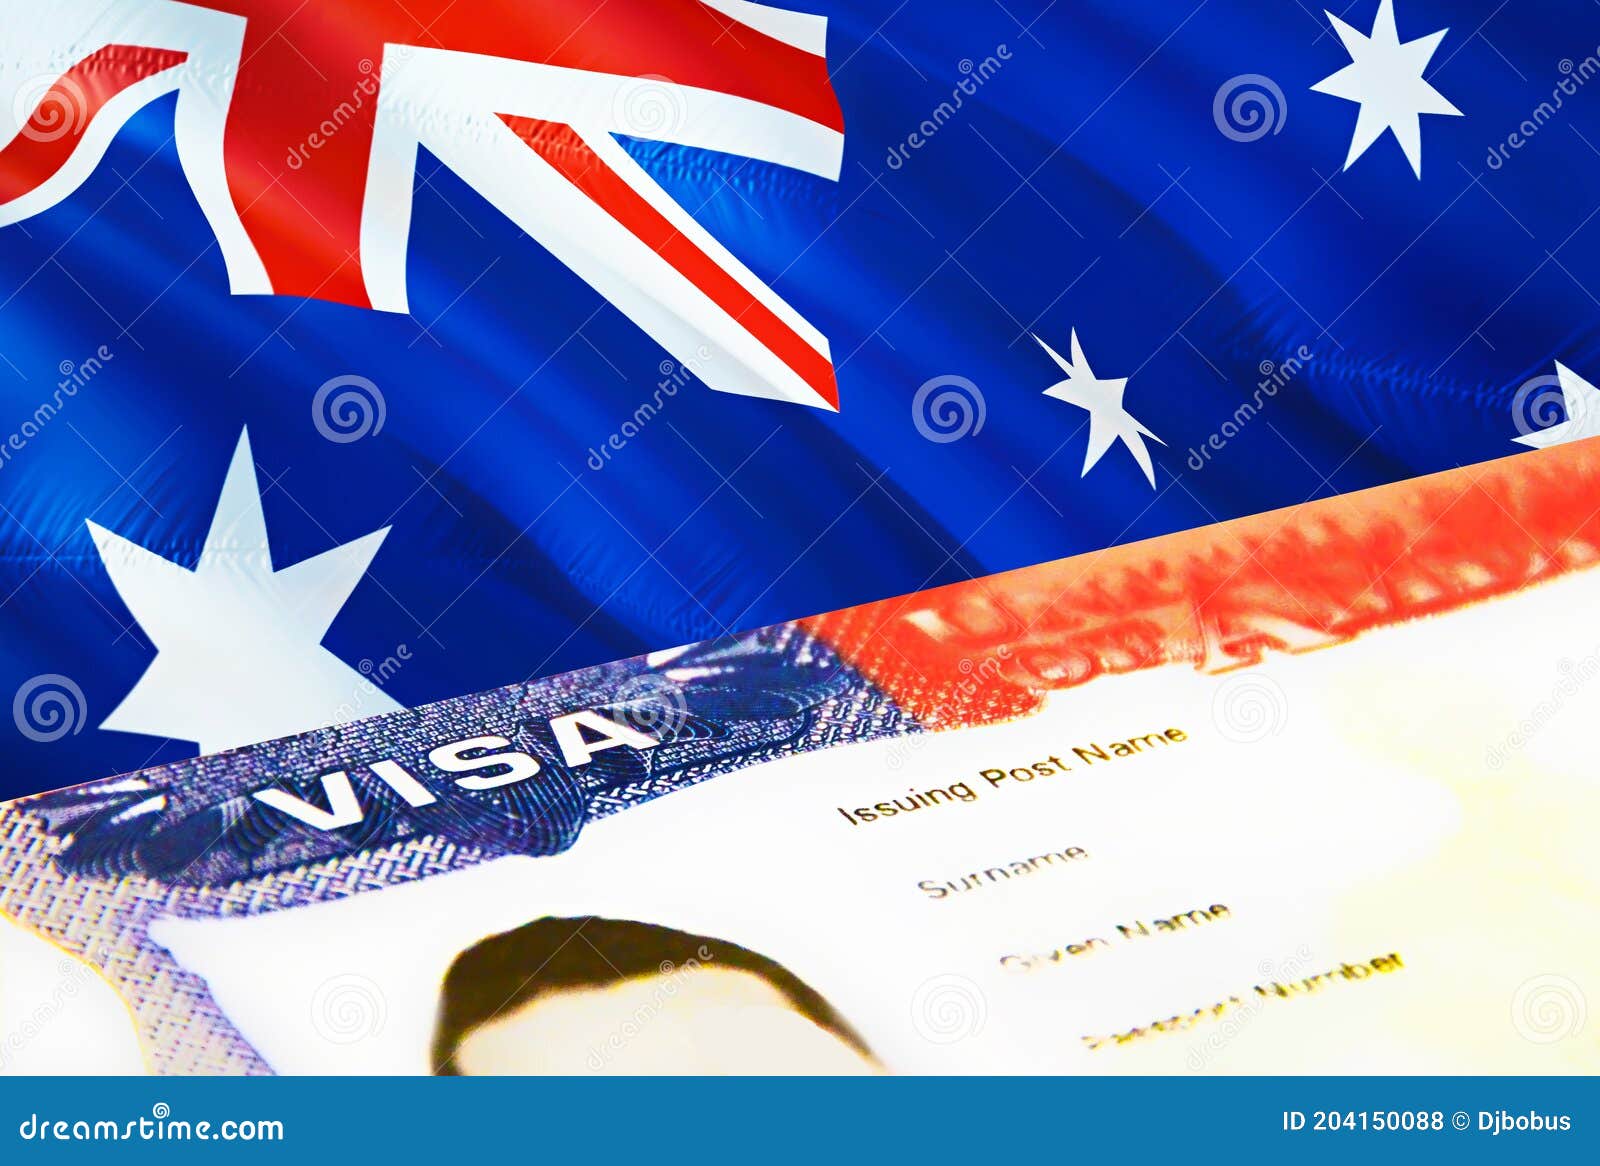 澳大利亚护照 库存例证. 插画 包括有 没人, 公民身份, 旅游业, 文件, 说明文件, 纸张, 确定, 证券 - 54666332